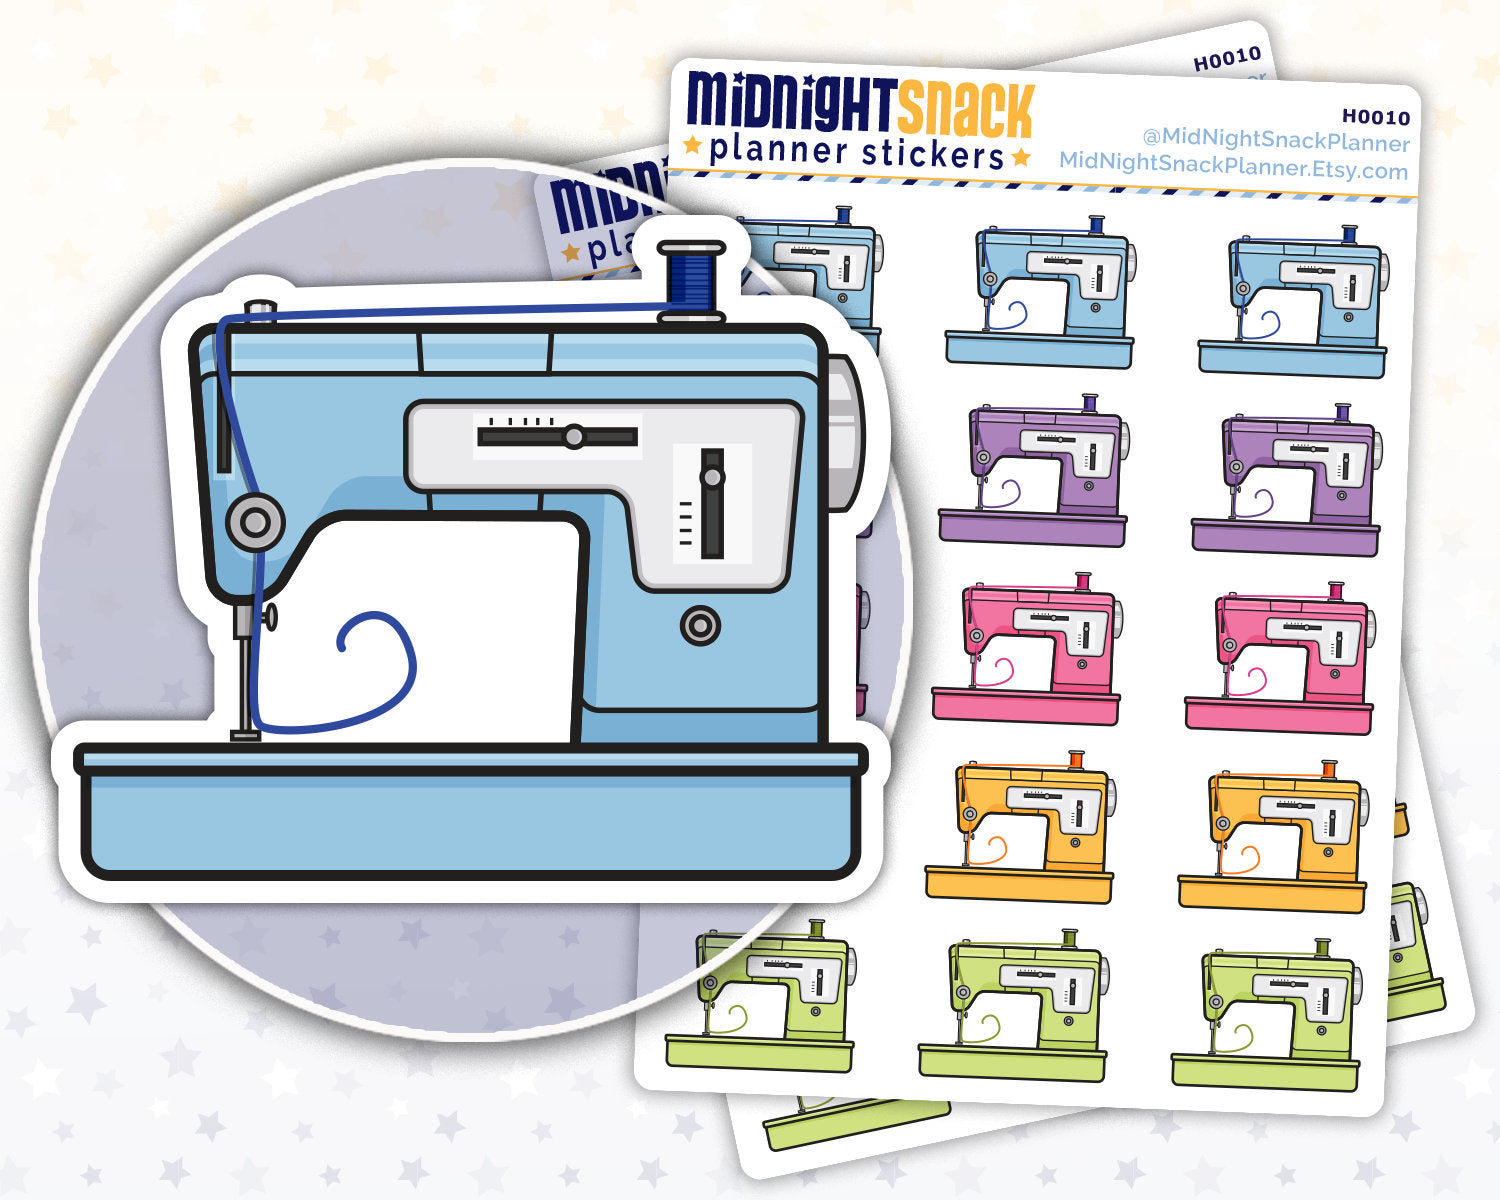 Sewing Machine Icon: Craft Planner Stickers Midnight Snack Planner